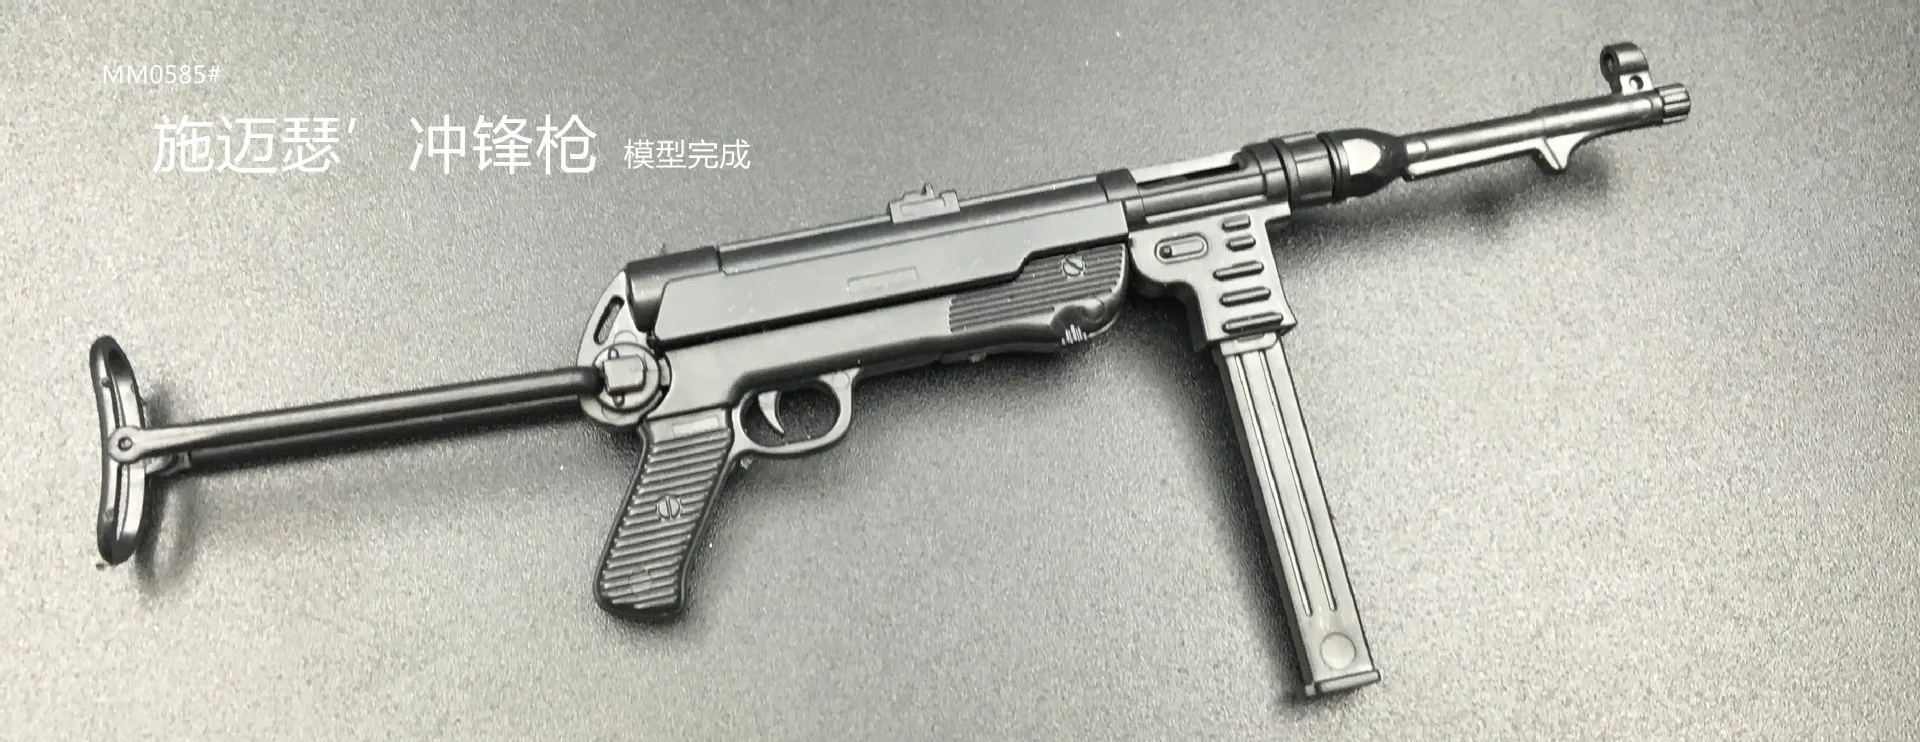 1:6 третьего поколения пистолет Модель MP5 MP40 УЗИ 4D модель головоломка DIY статический военная модель Пластик собраны модель оружия игрушки